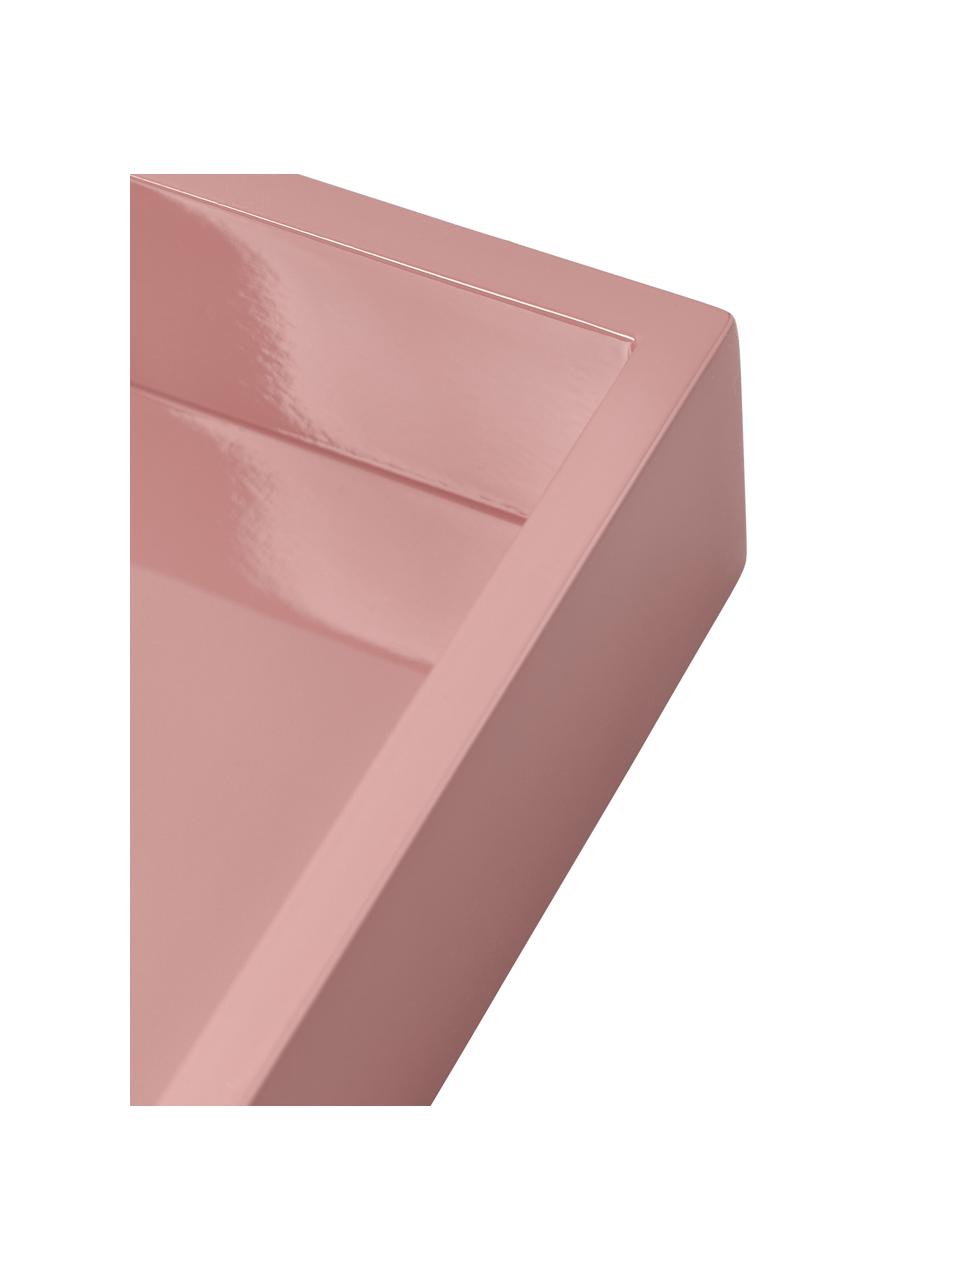 Bandeja brillante Hayley, Tablero de fibras de densidad media (MDF) pintado, Rosa oscuro, An 24 x L 33 cm